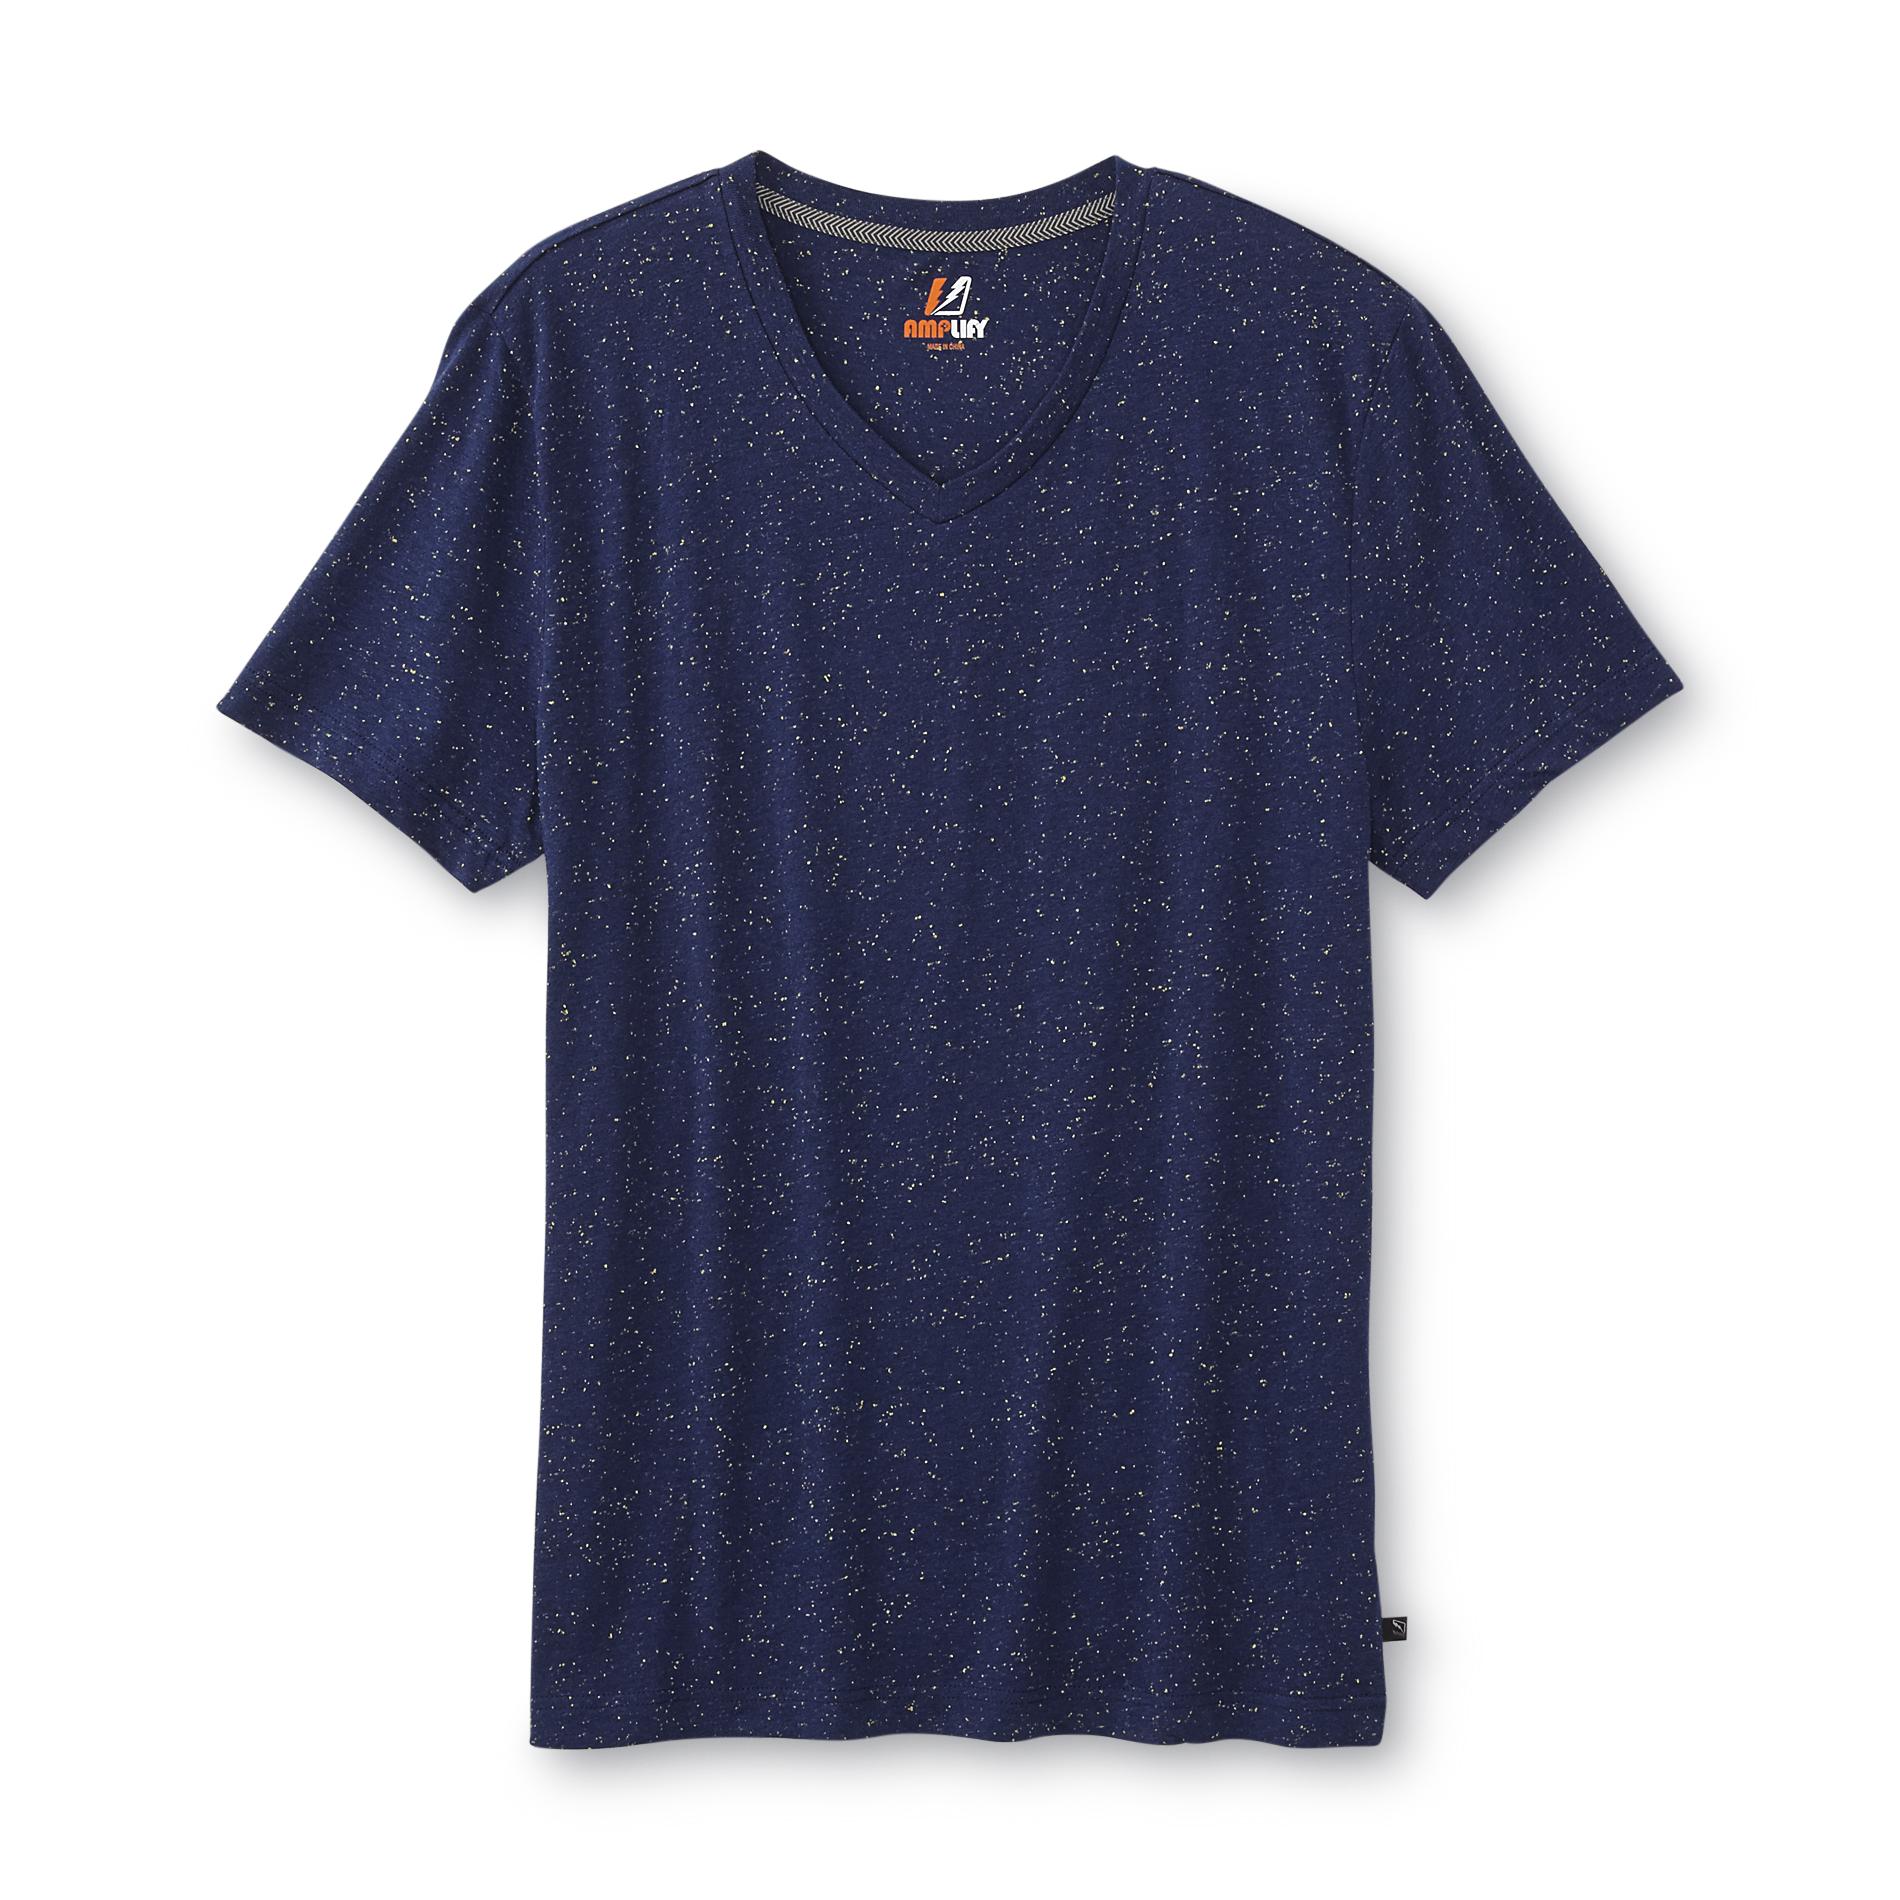 Amplify Young Men's Speckled V-Neck T-Shirt